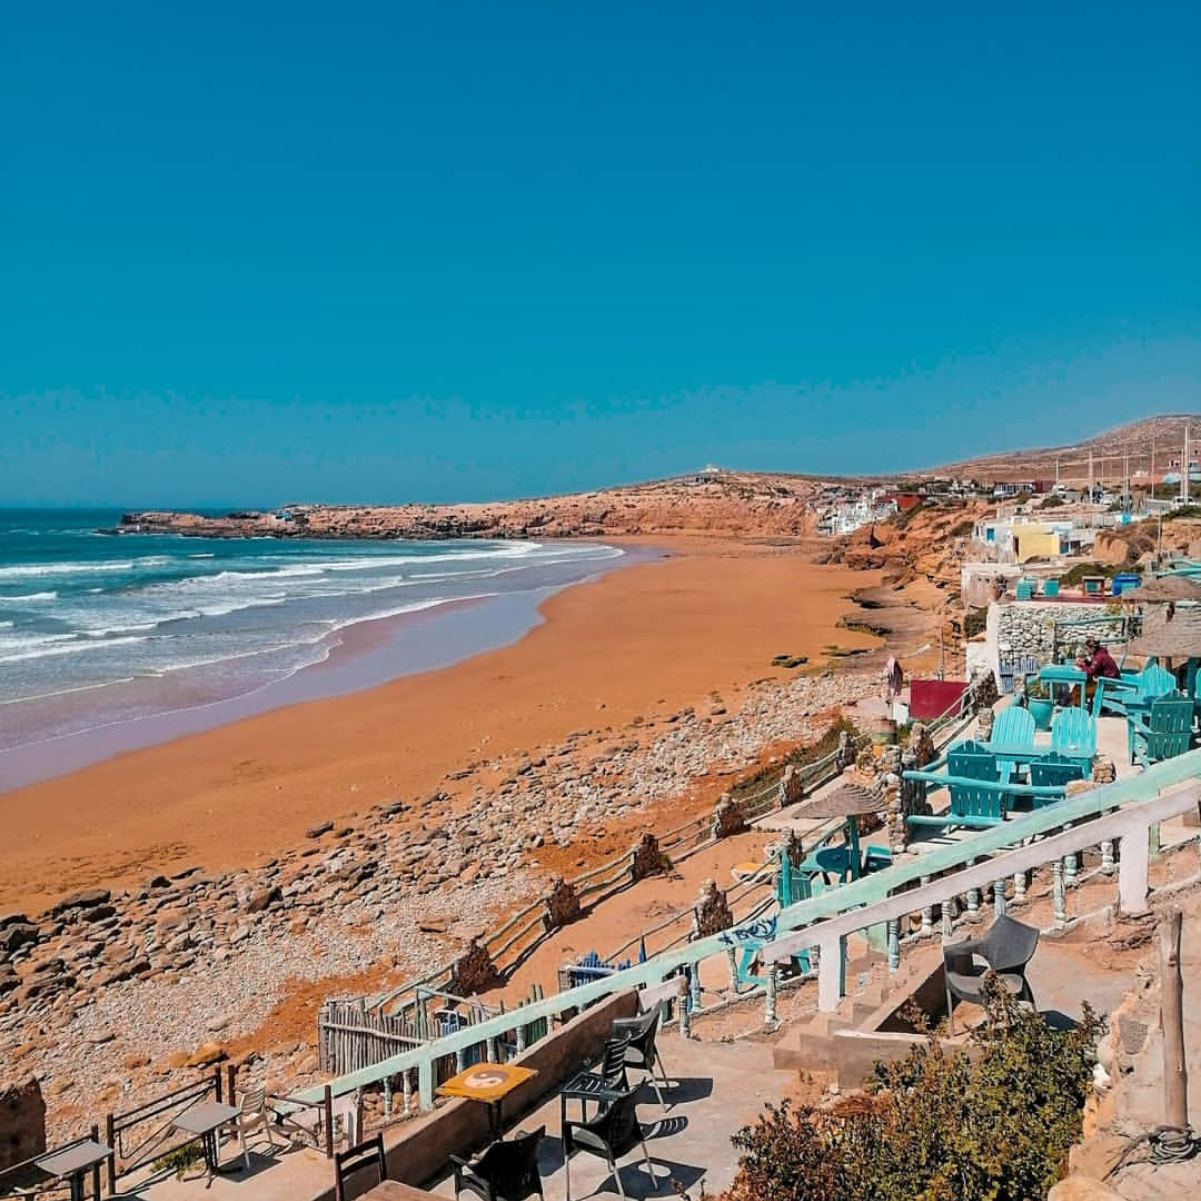 Sud du Maroc - Instagram © @abdu_traveler